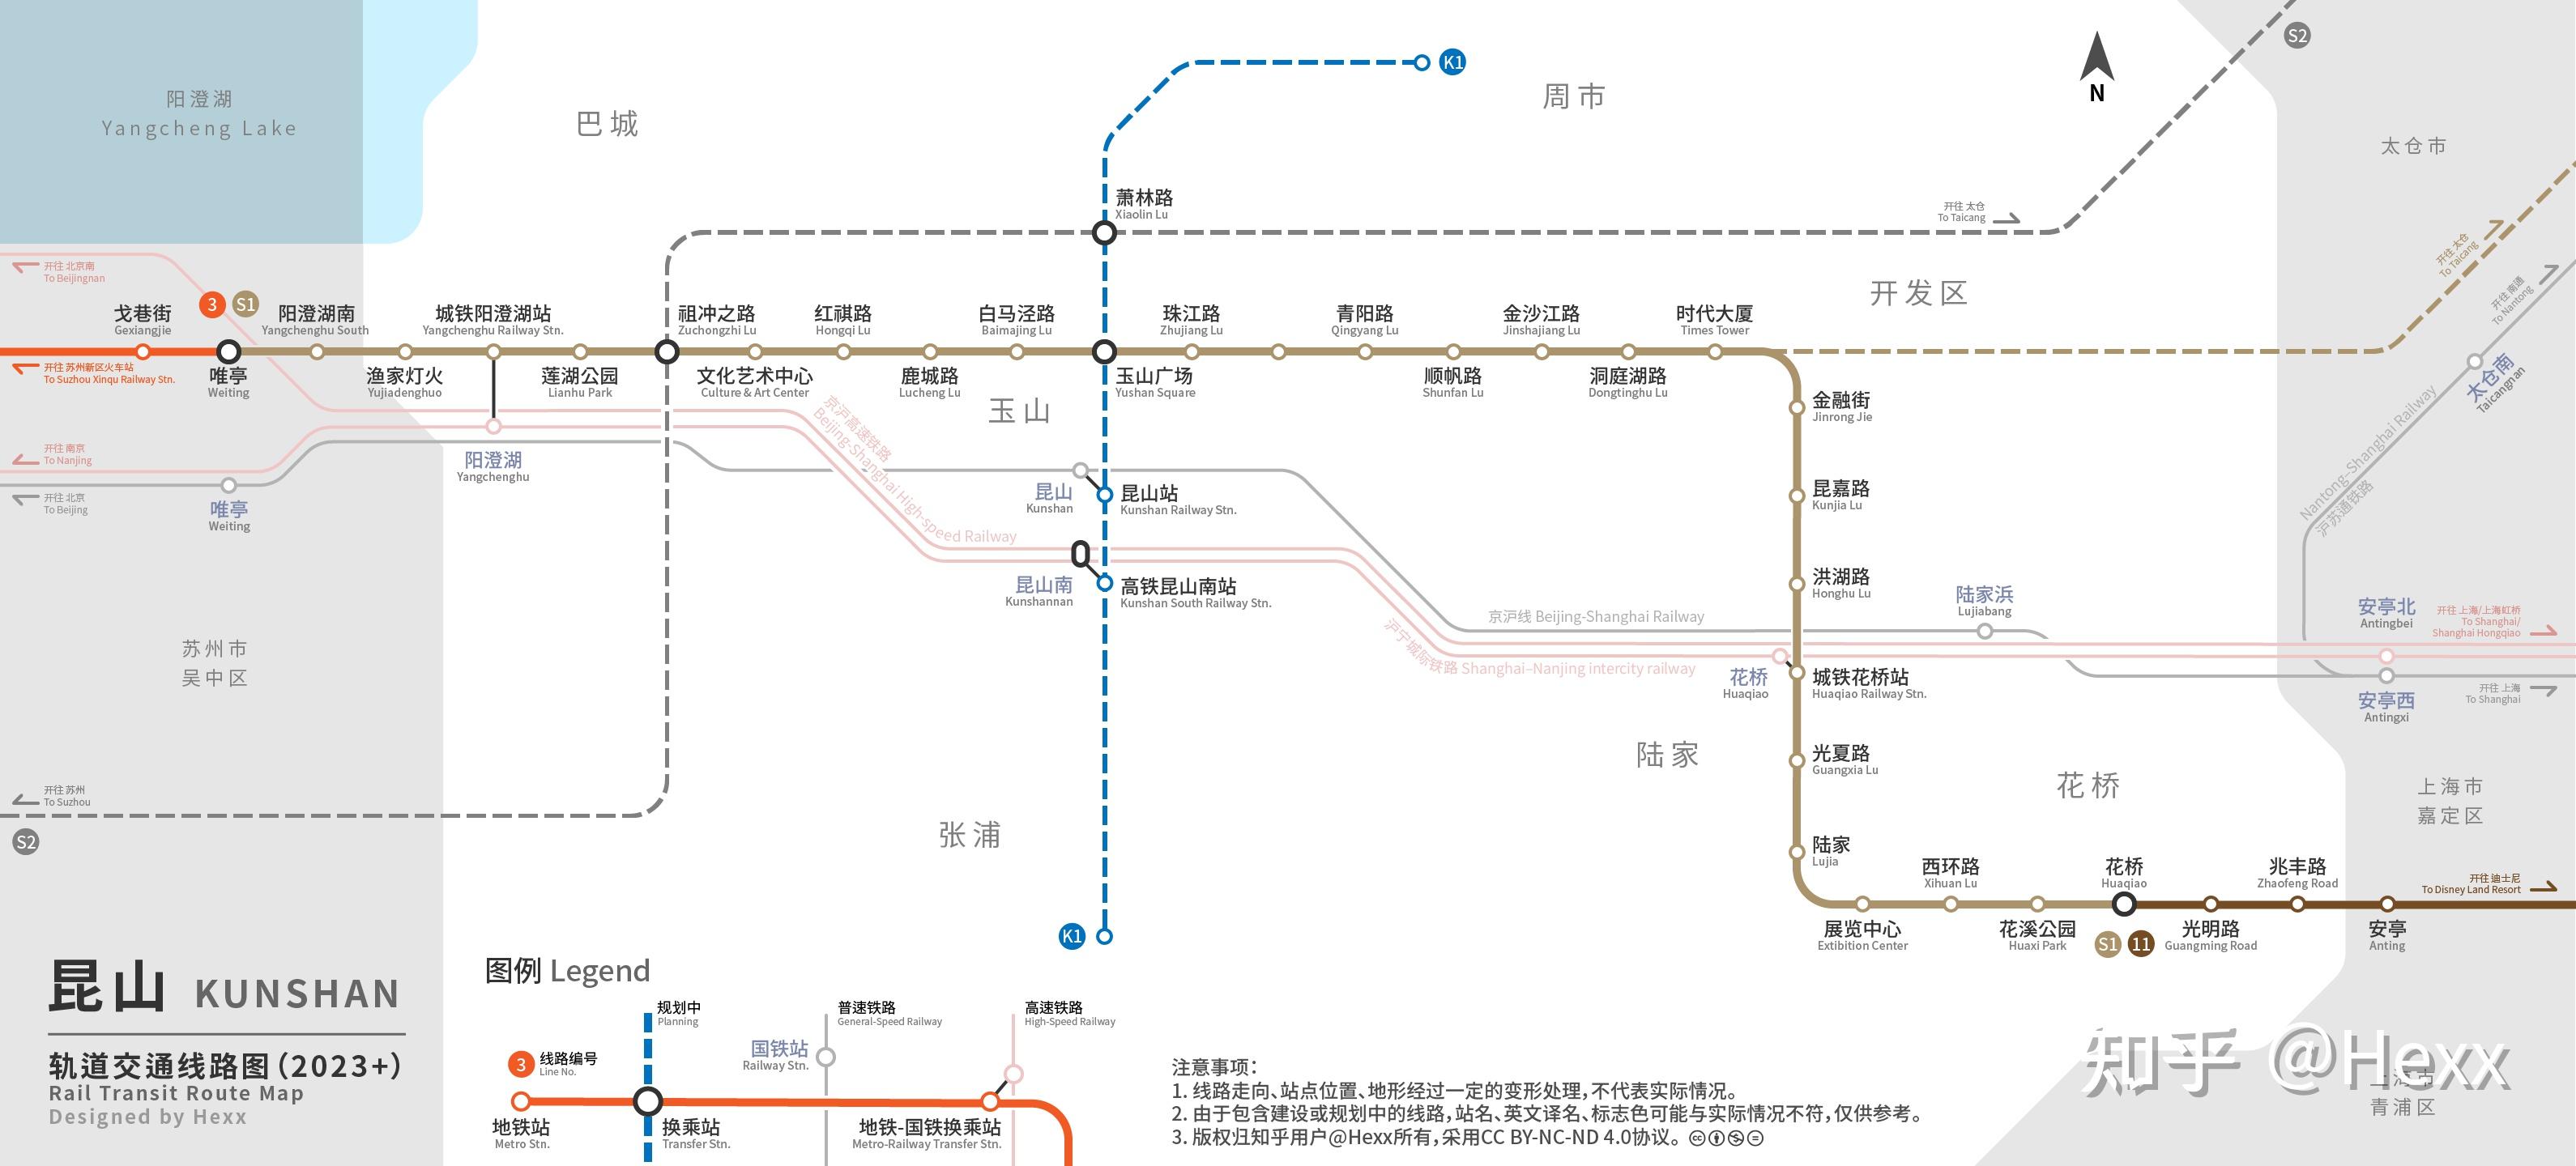 昆山轨道交通规划线路图(202108更新)